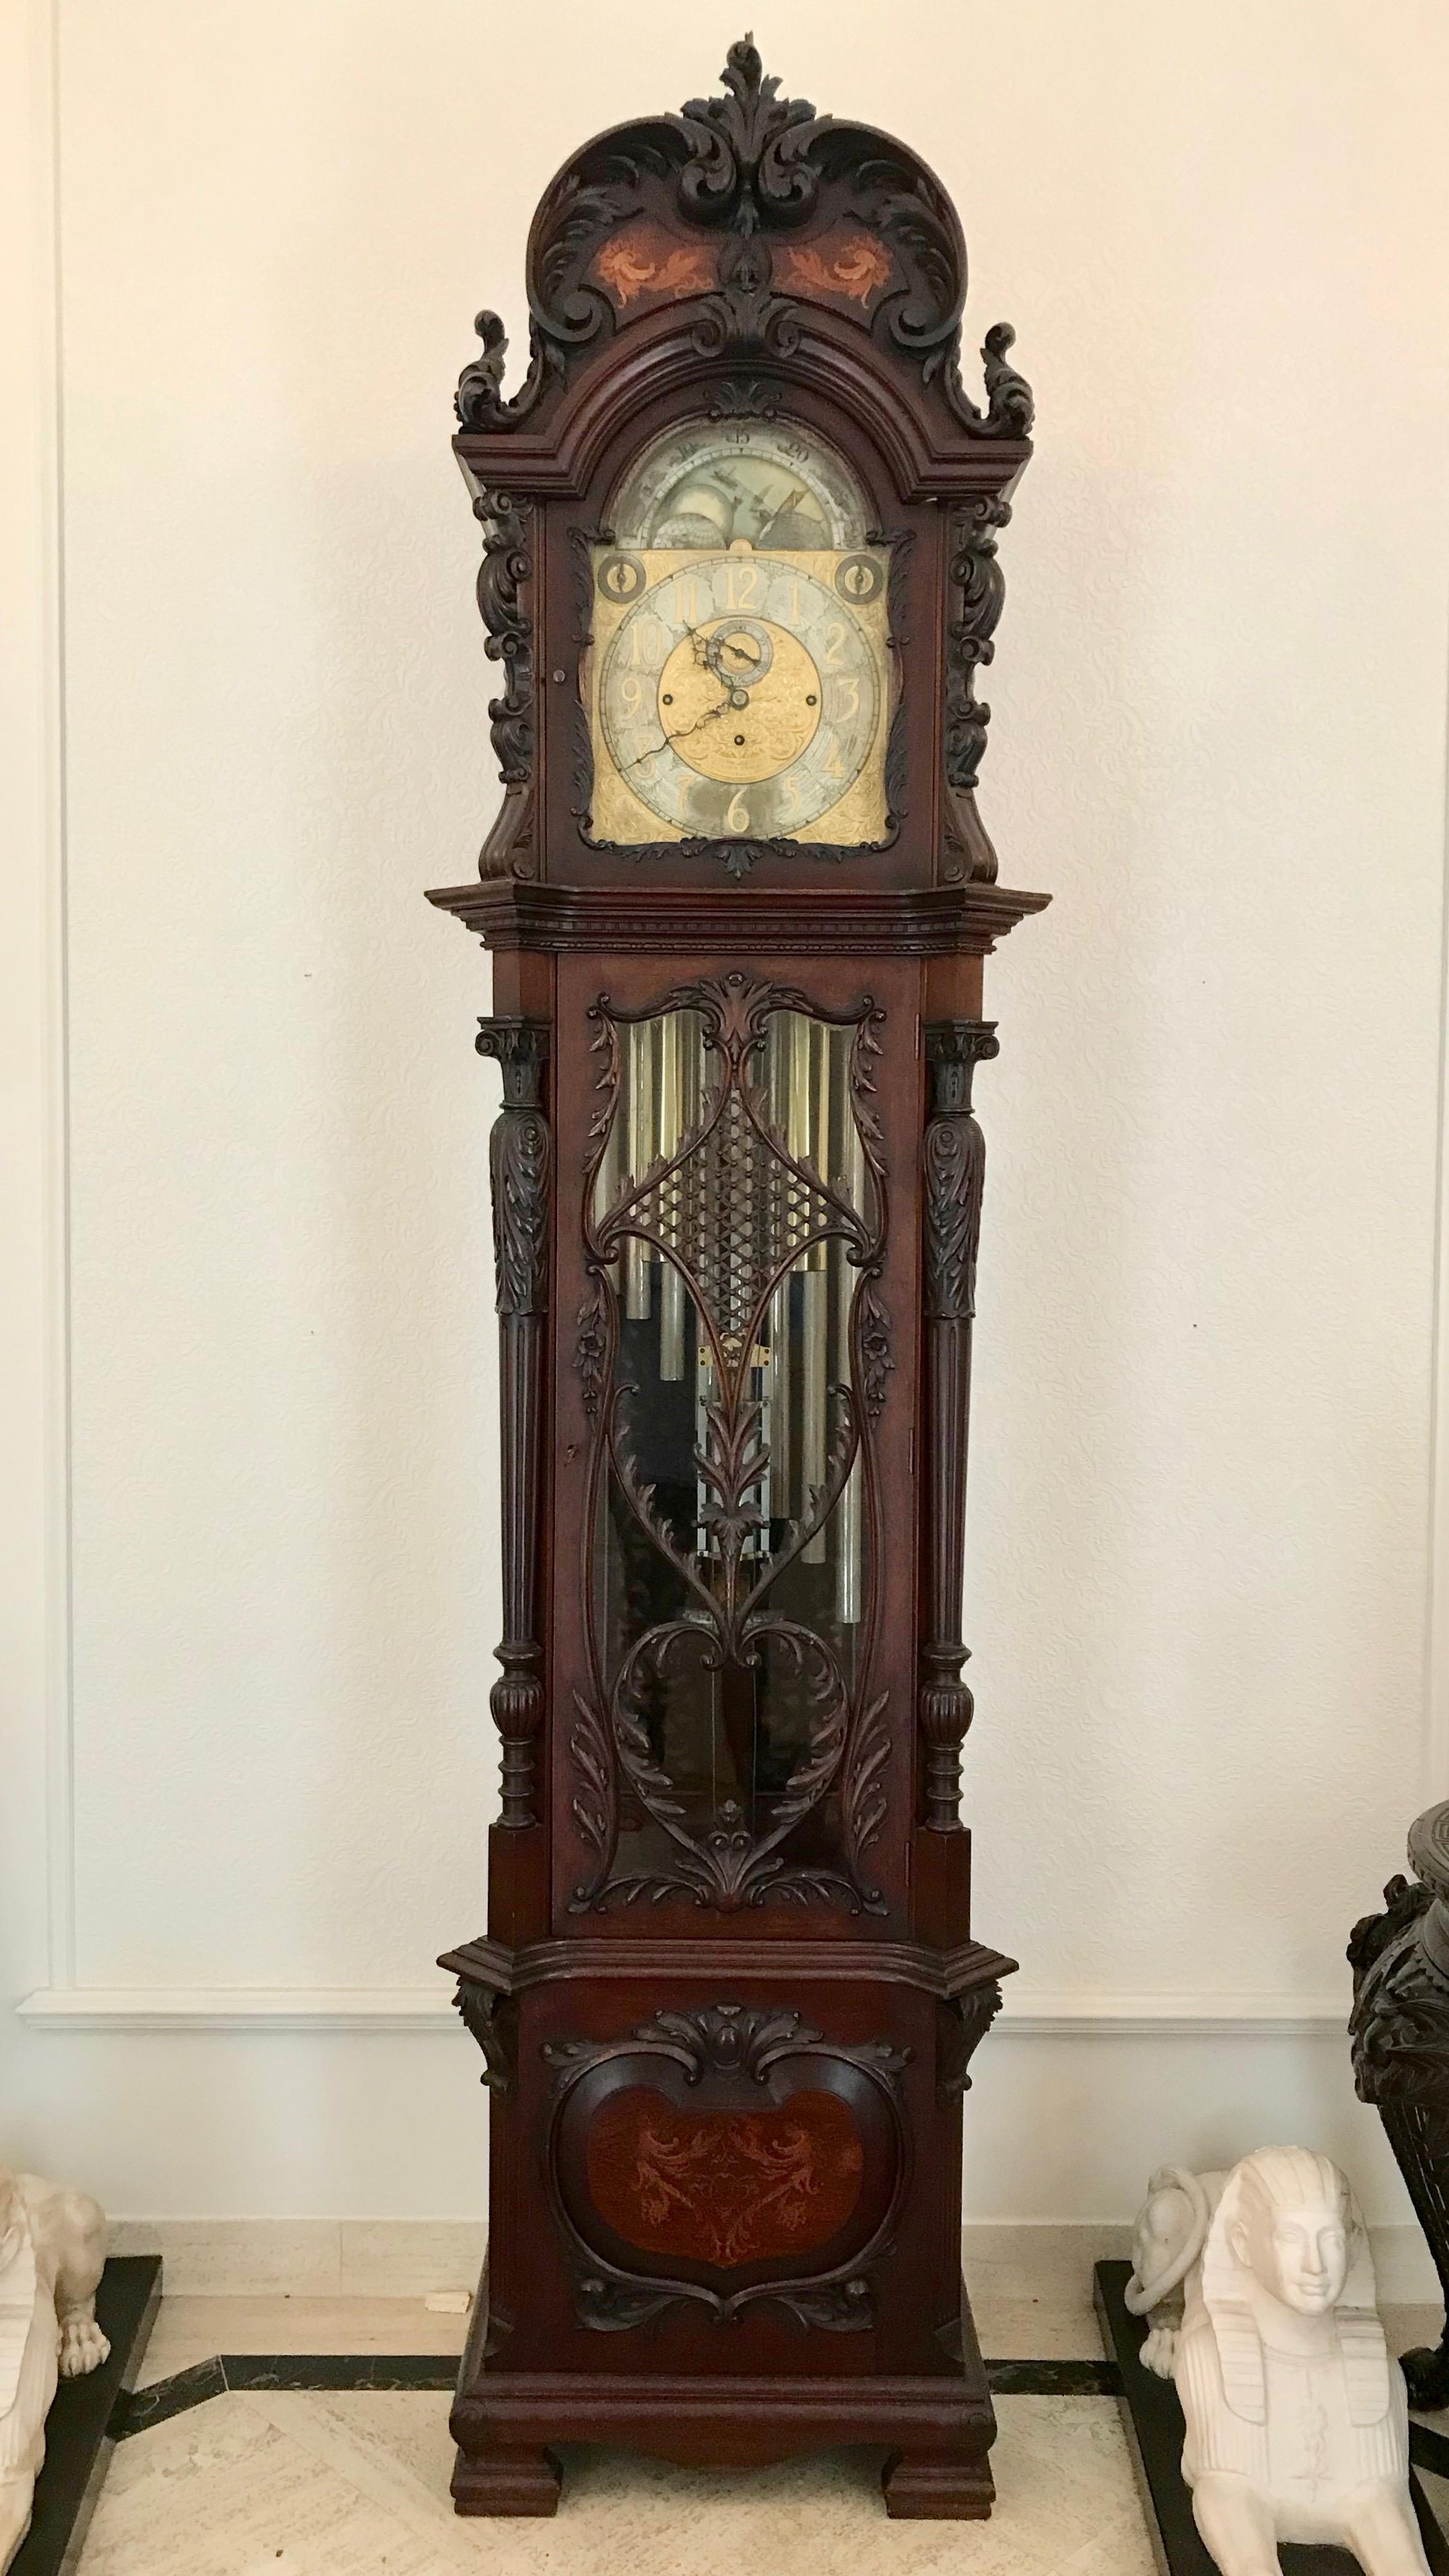 Die Uhr besteht aus einem kunstvoll geschnitzten Gehäuse mit aufwendigen
Bundarbeiten und exotische Intarsien in der Krone.
Das 